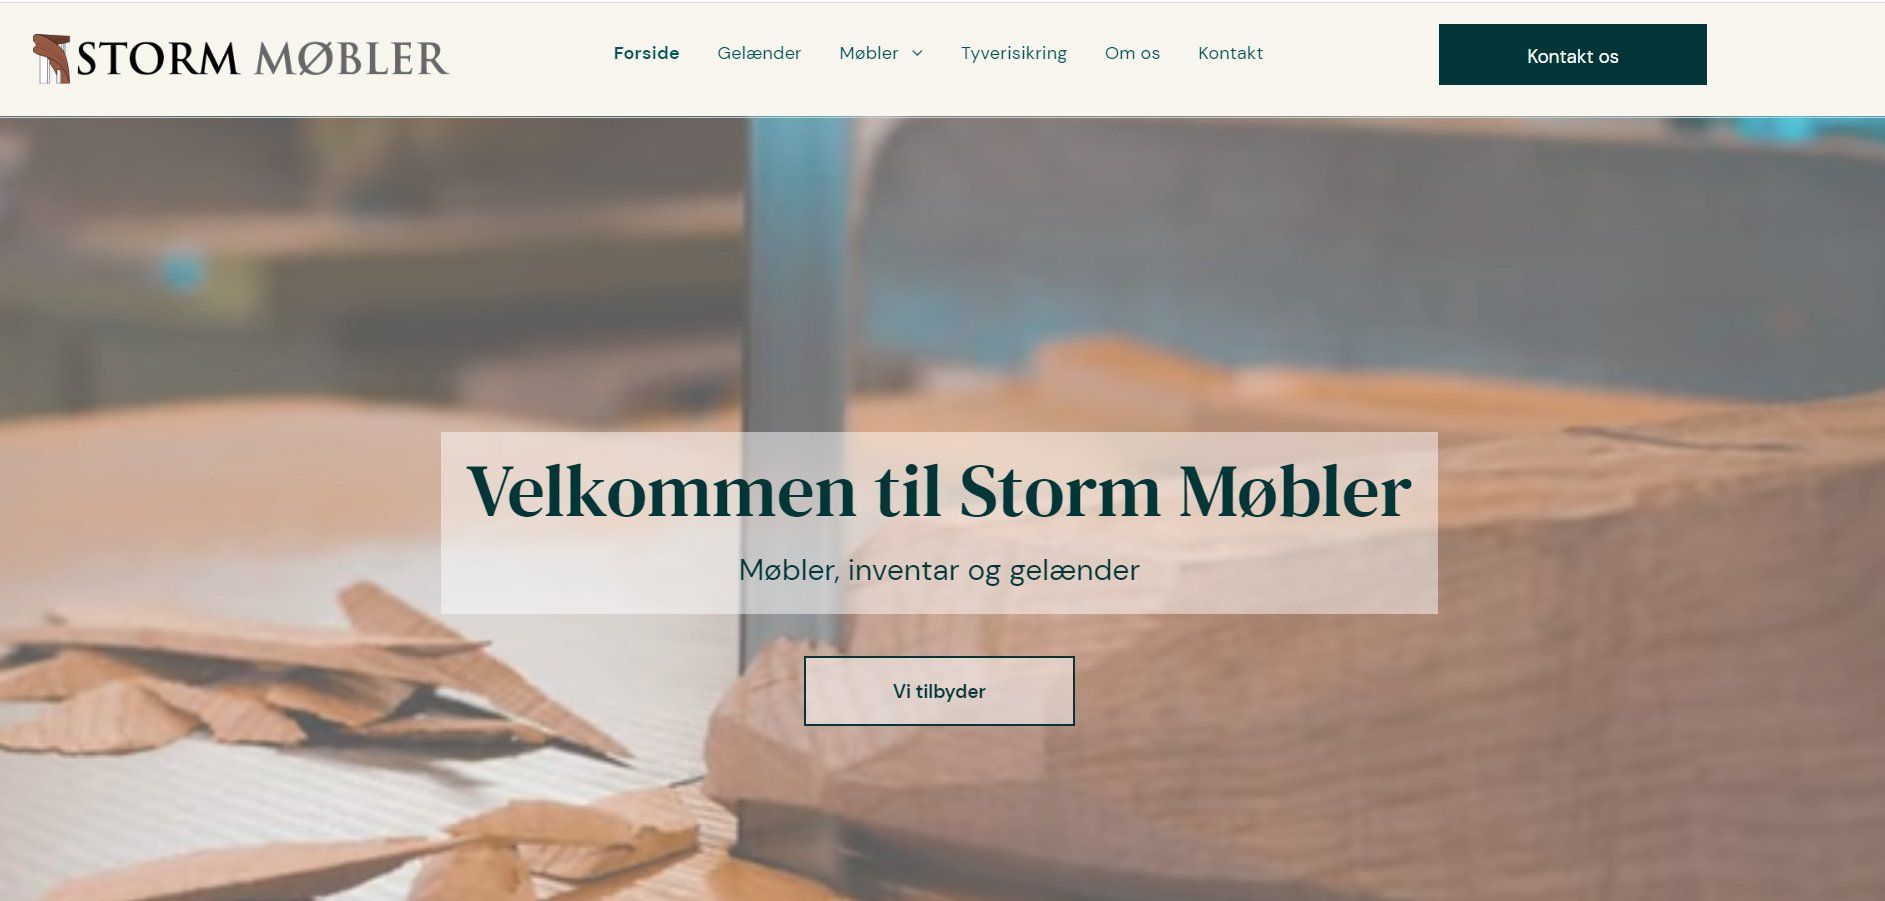 Et billede af forsiden på Storm Møblers hjemmeside